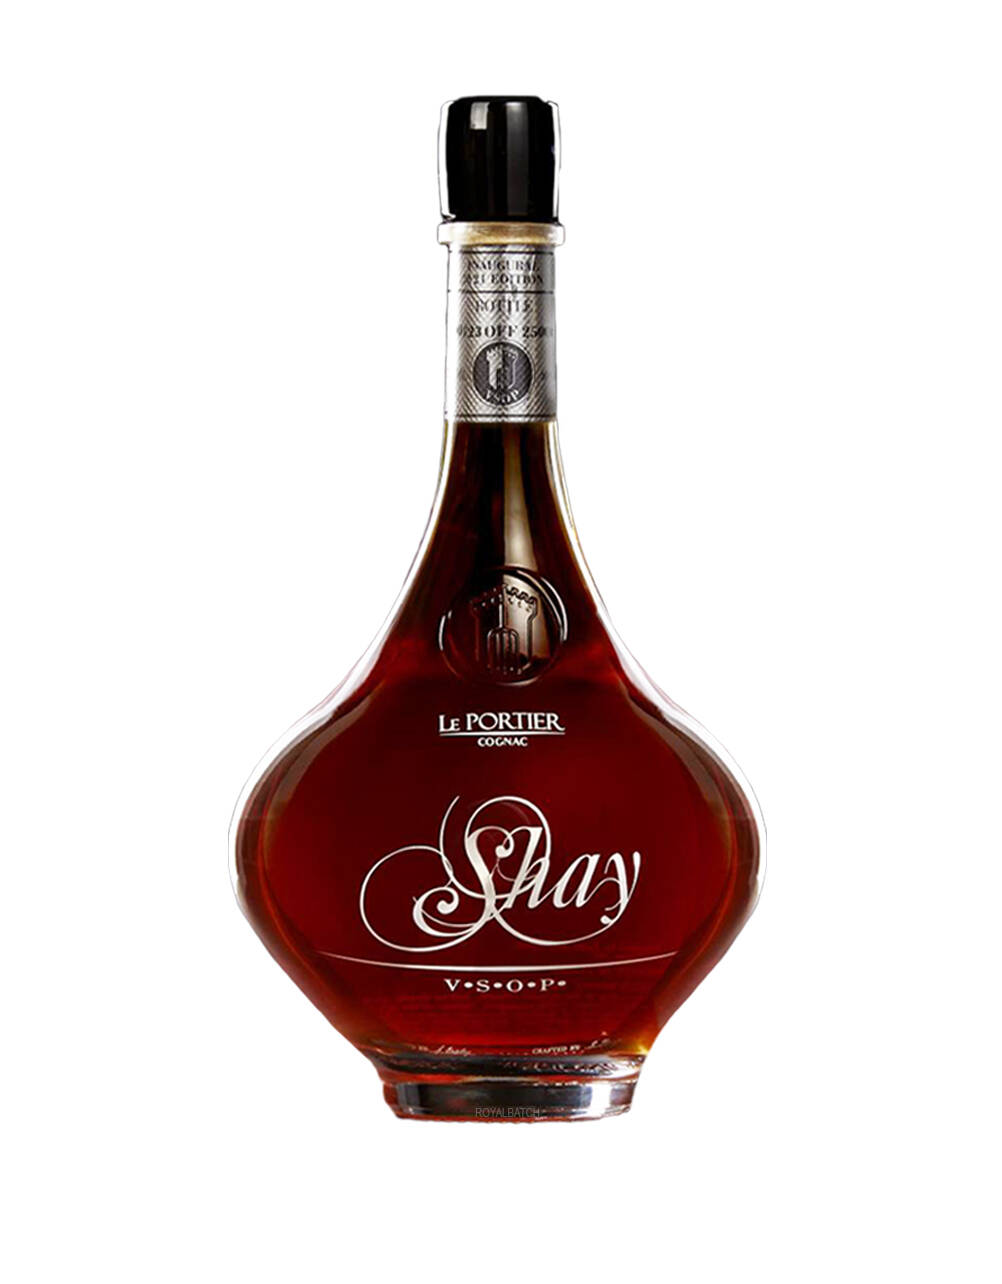 Le Portier Shay VSOP Cognac